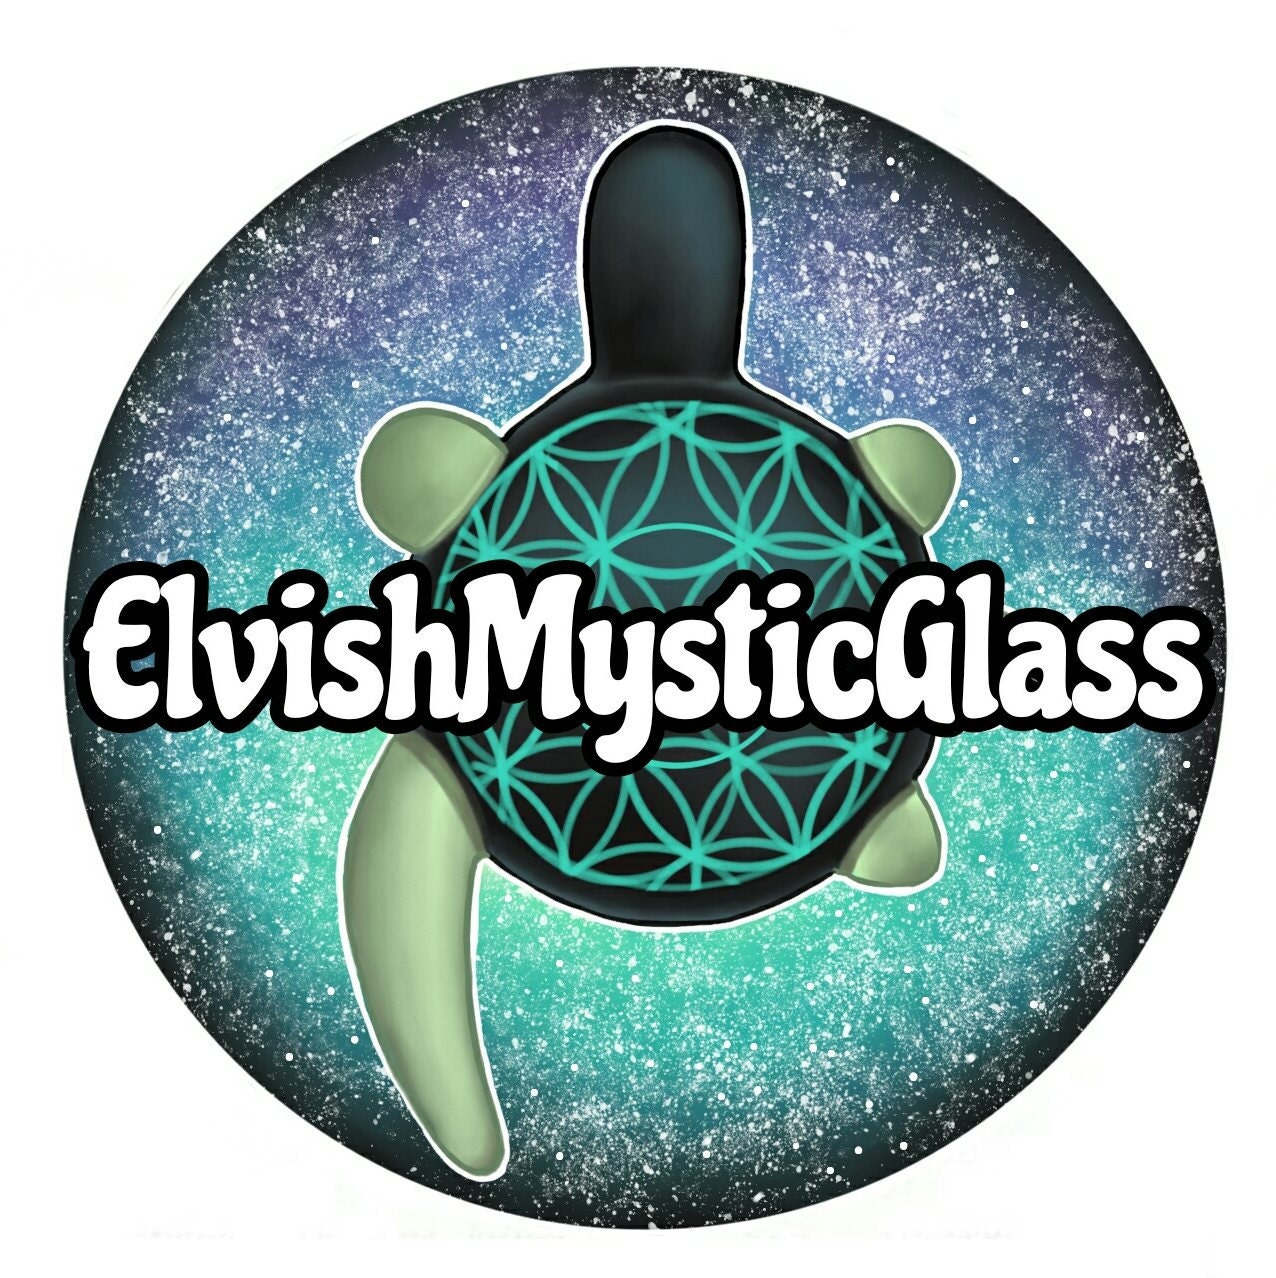 ElvishMysticGlass | Etsy